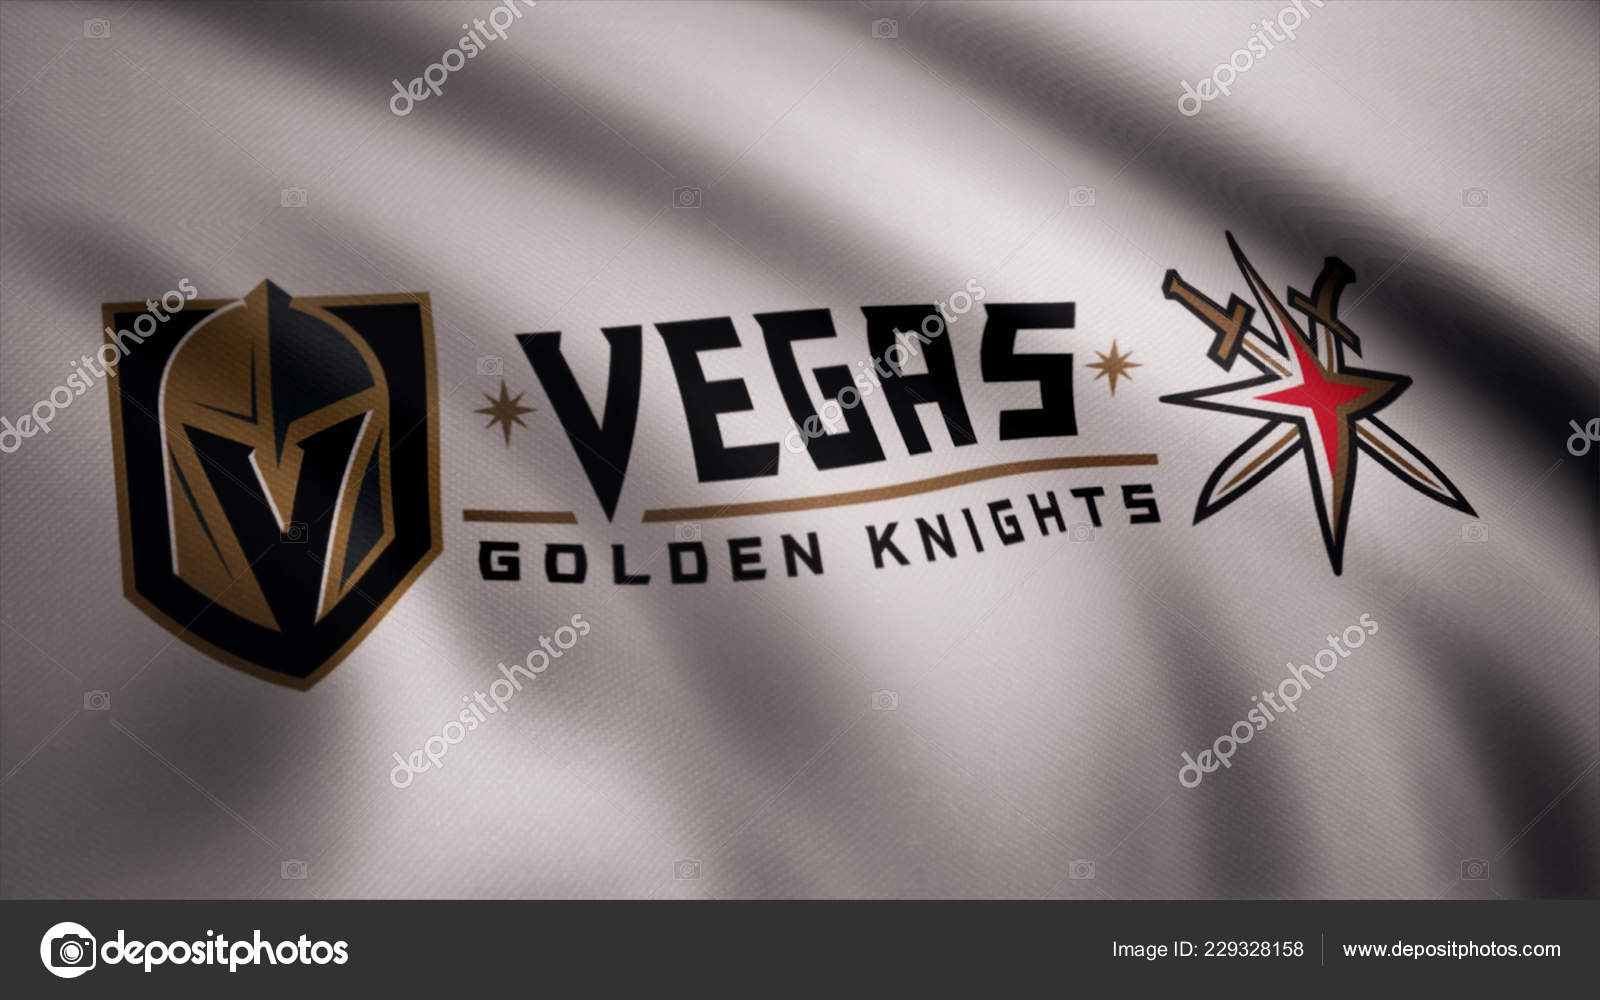 lv golden knights flag